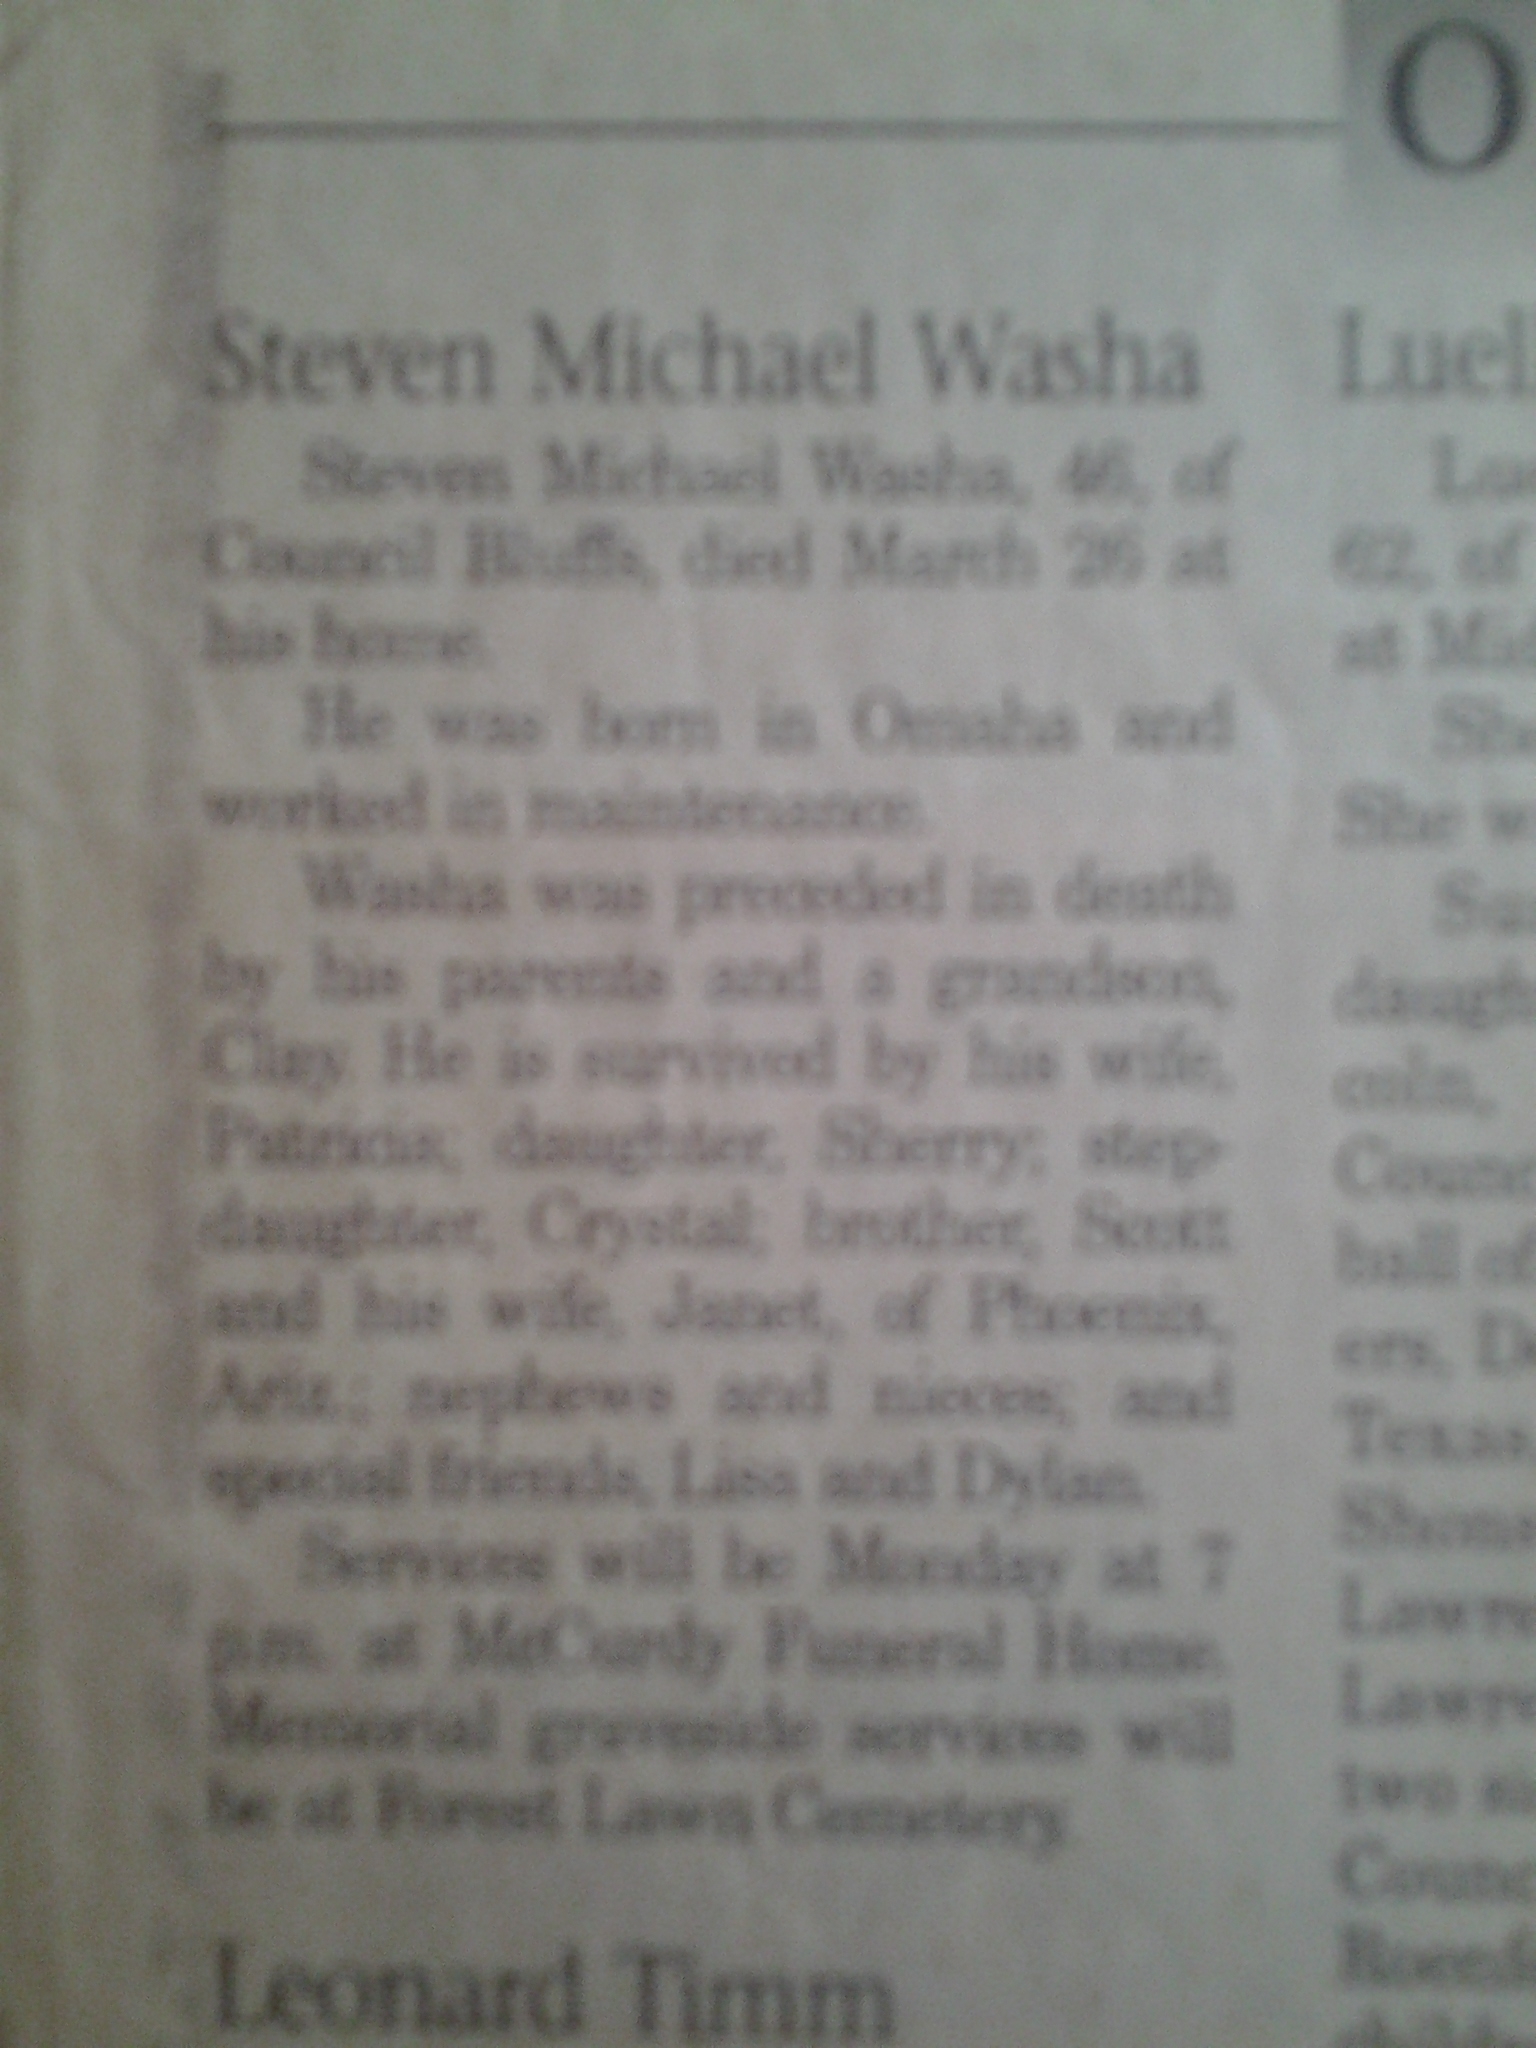 Steven M Washa Obituary